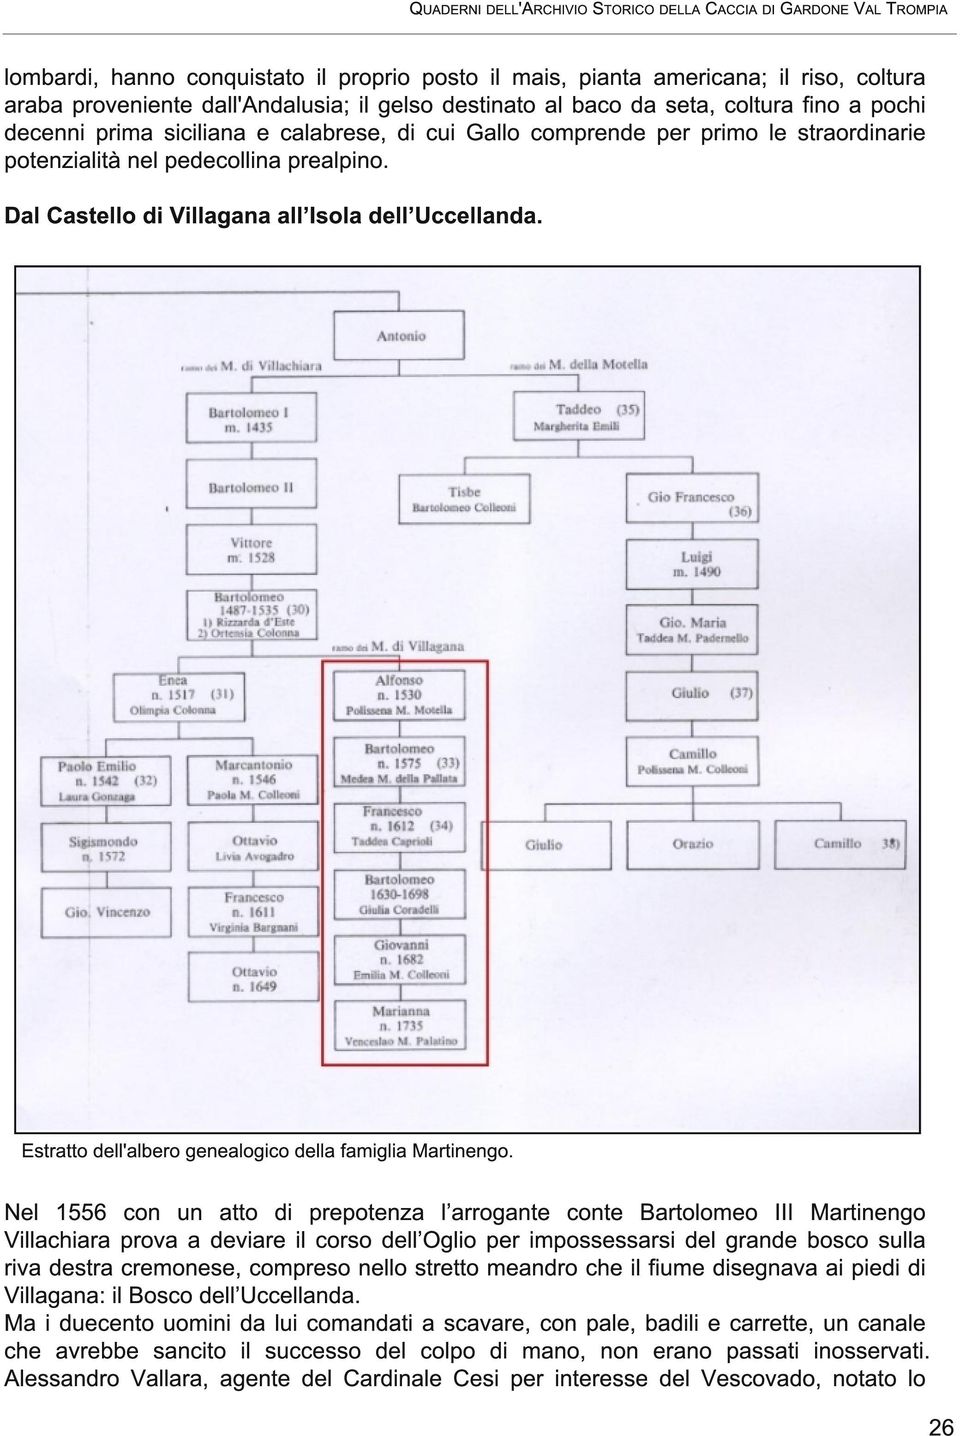 Estratto dell'albero genealogico della famiglia Martinengo.